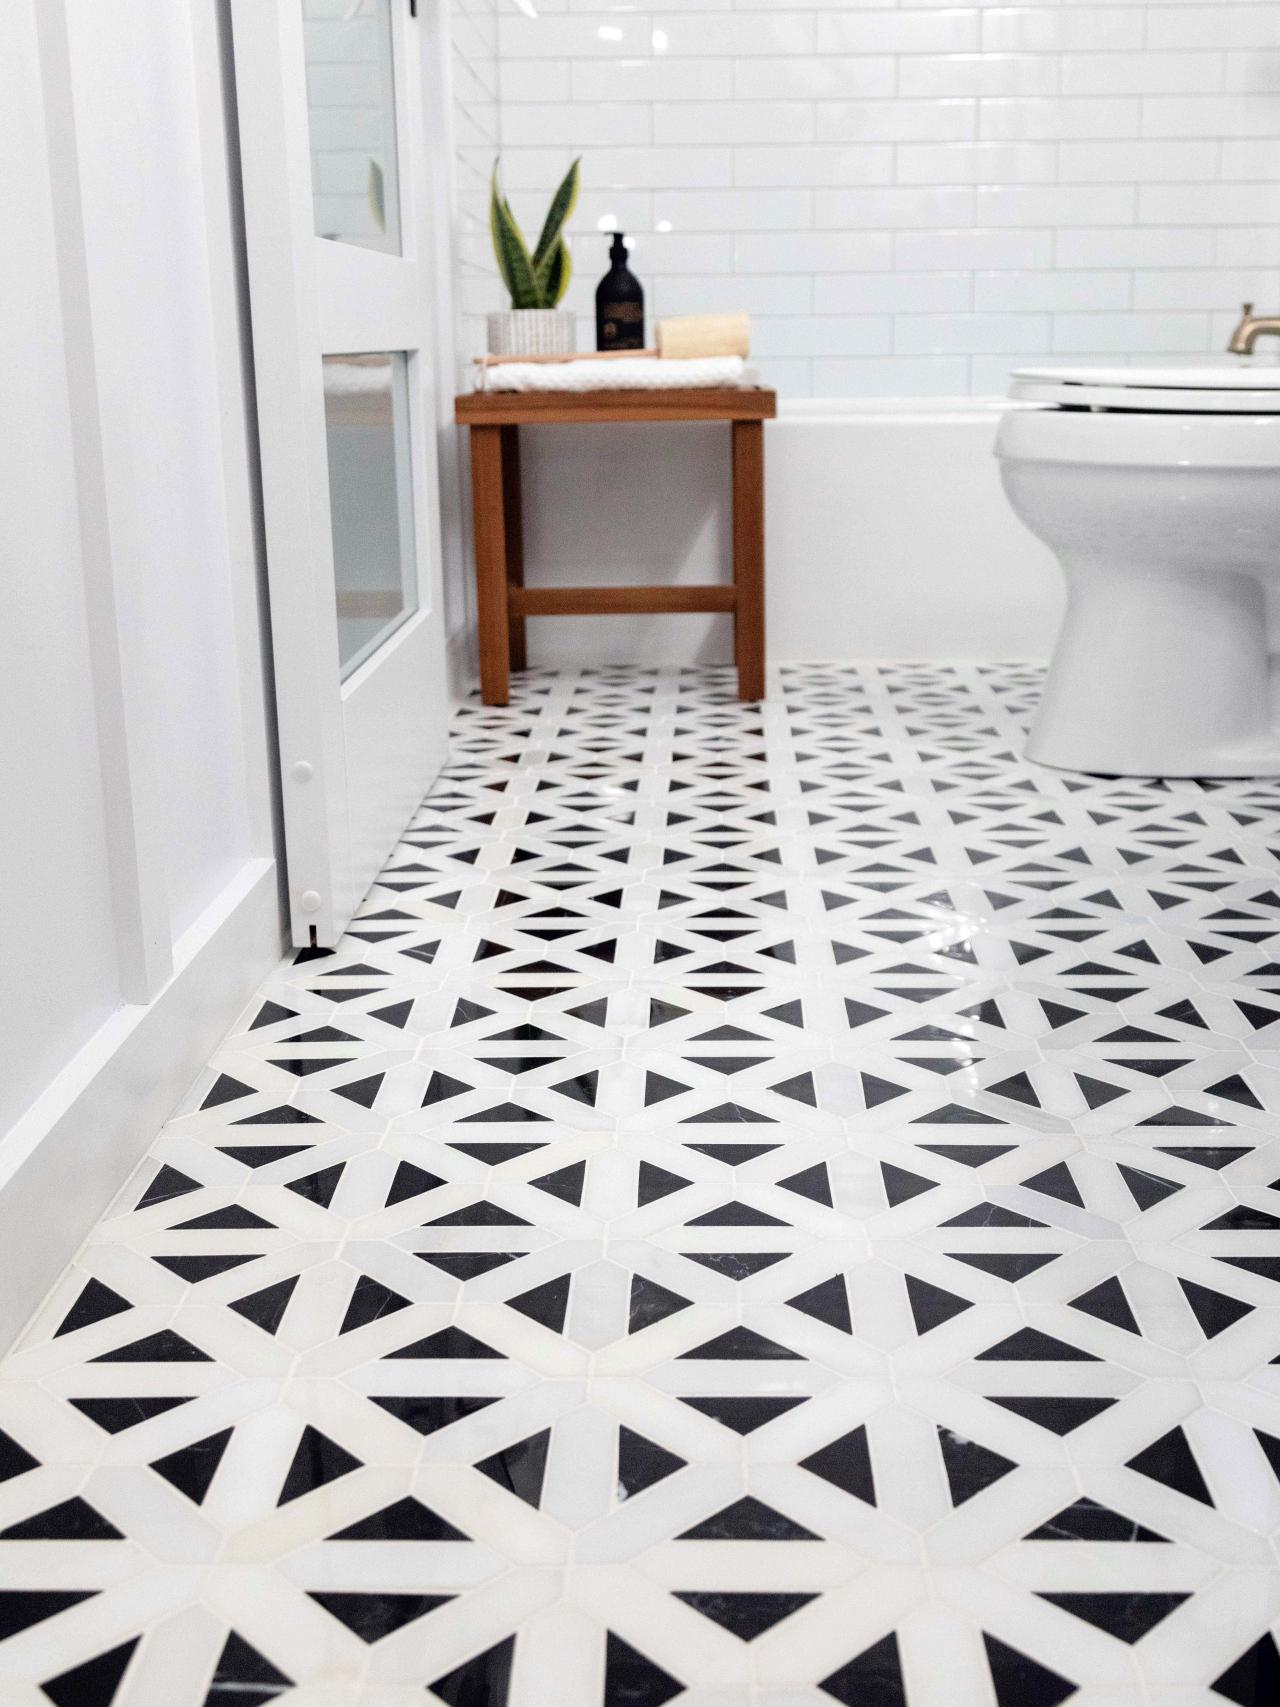 How To Lay A Tile Floor, How To Install A Tile Bathroom Floor